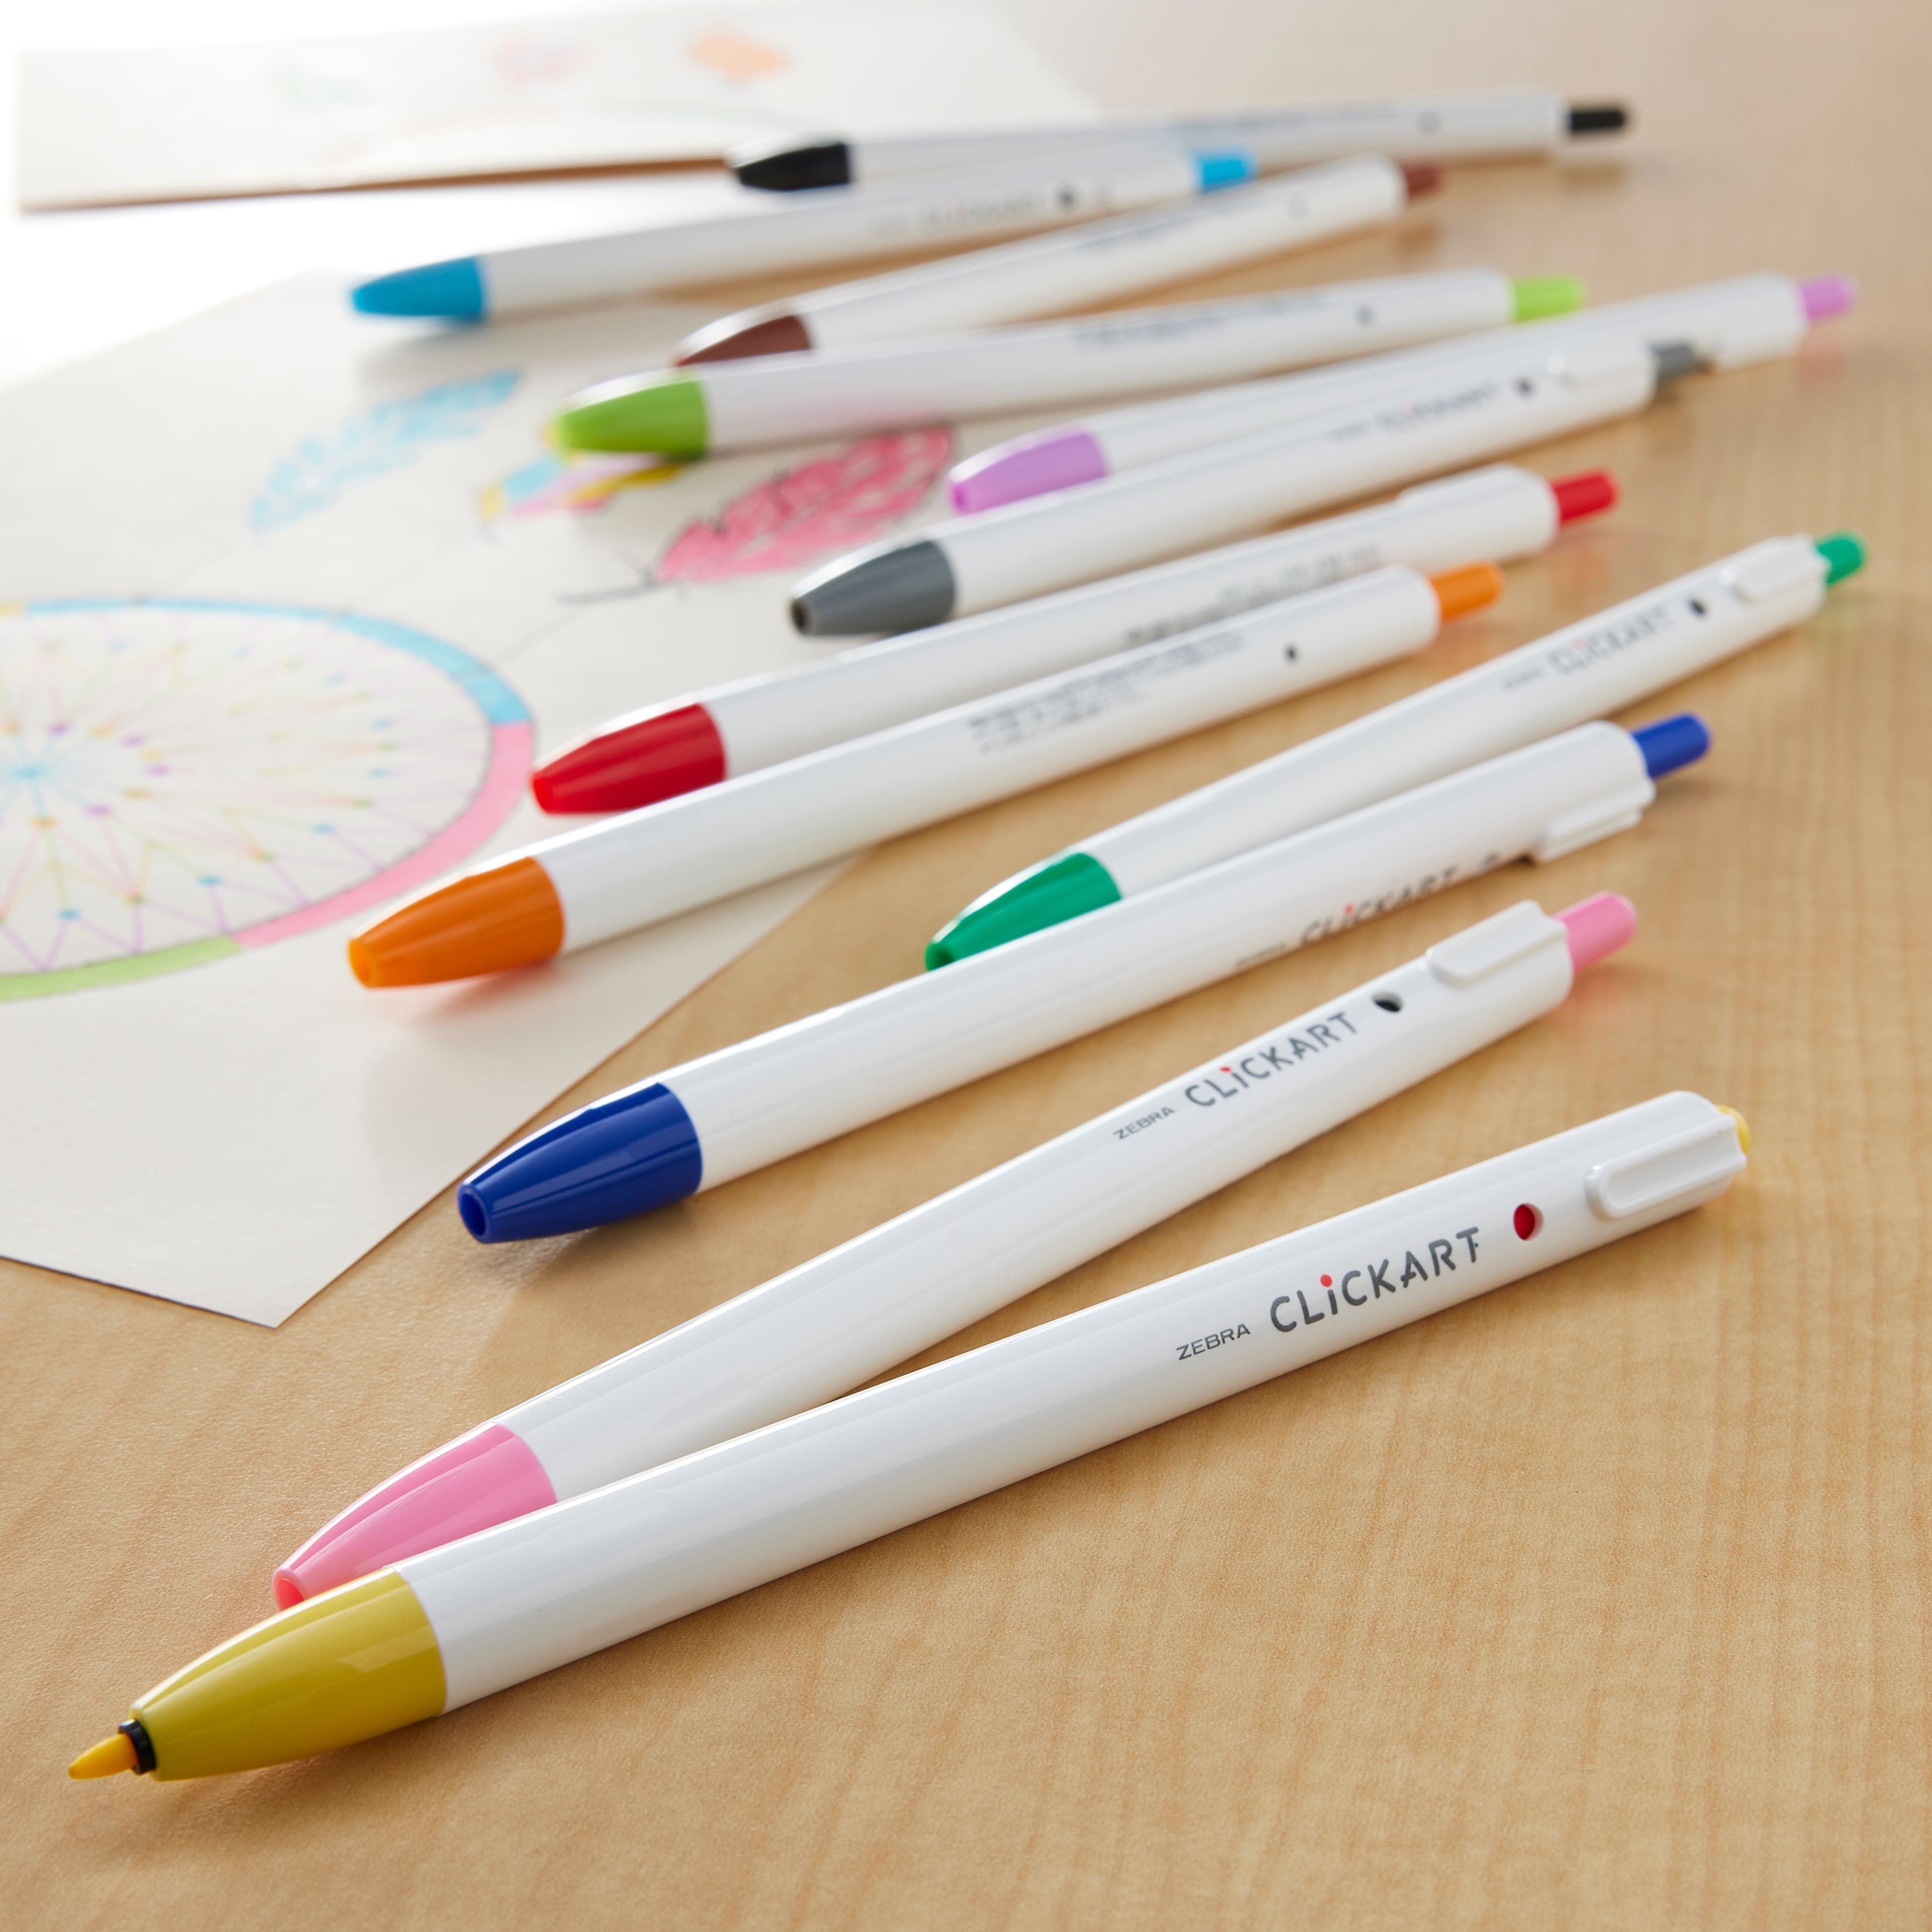 ClickArt Retractable Marker Pen  Marker pen, Pen and paper, Markers